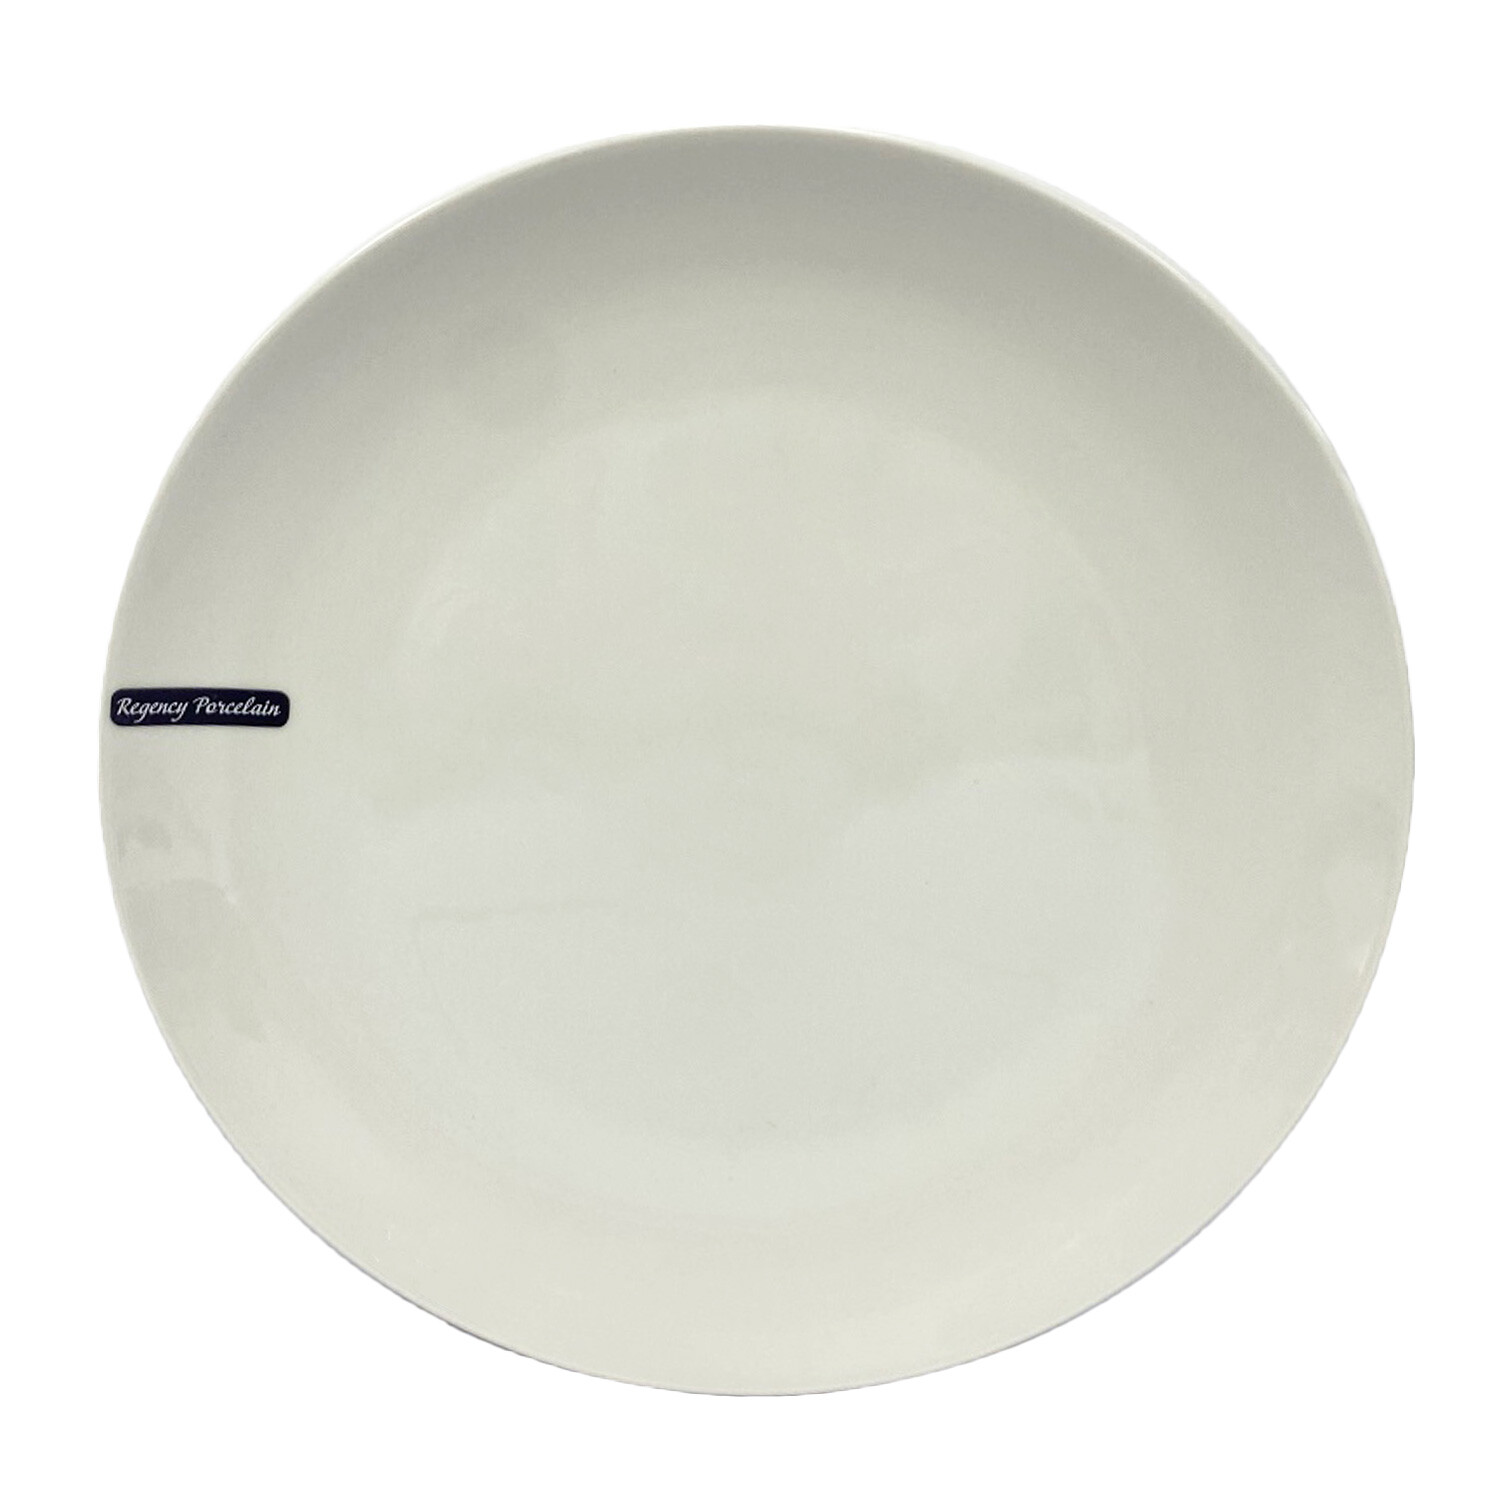 Regency Porcelain Coupe Dinner Plate - White Image